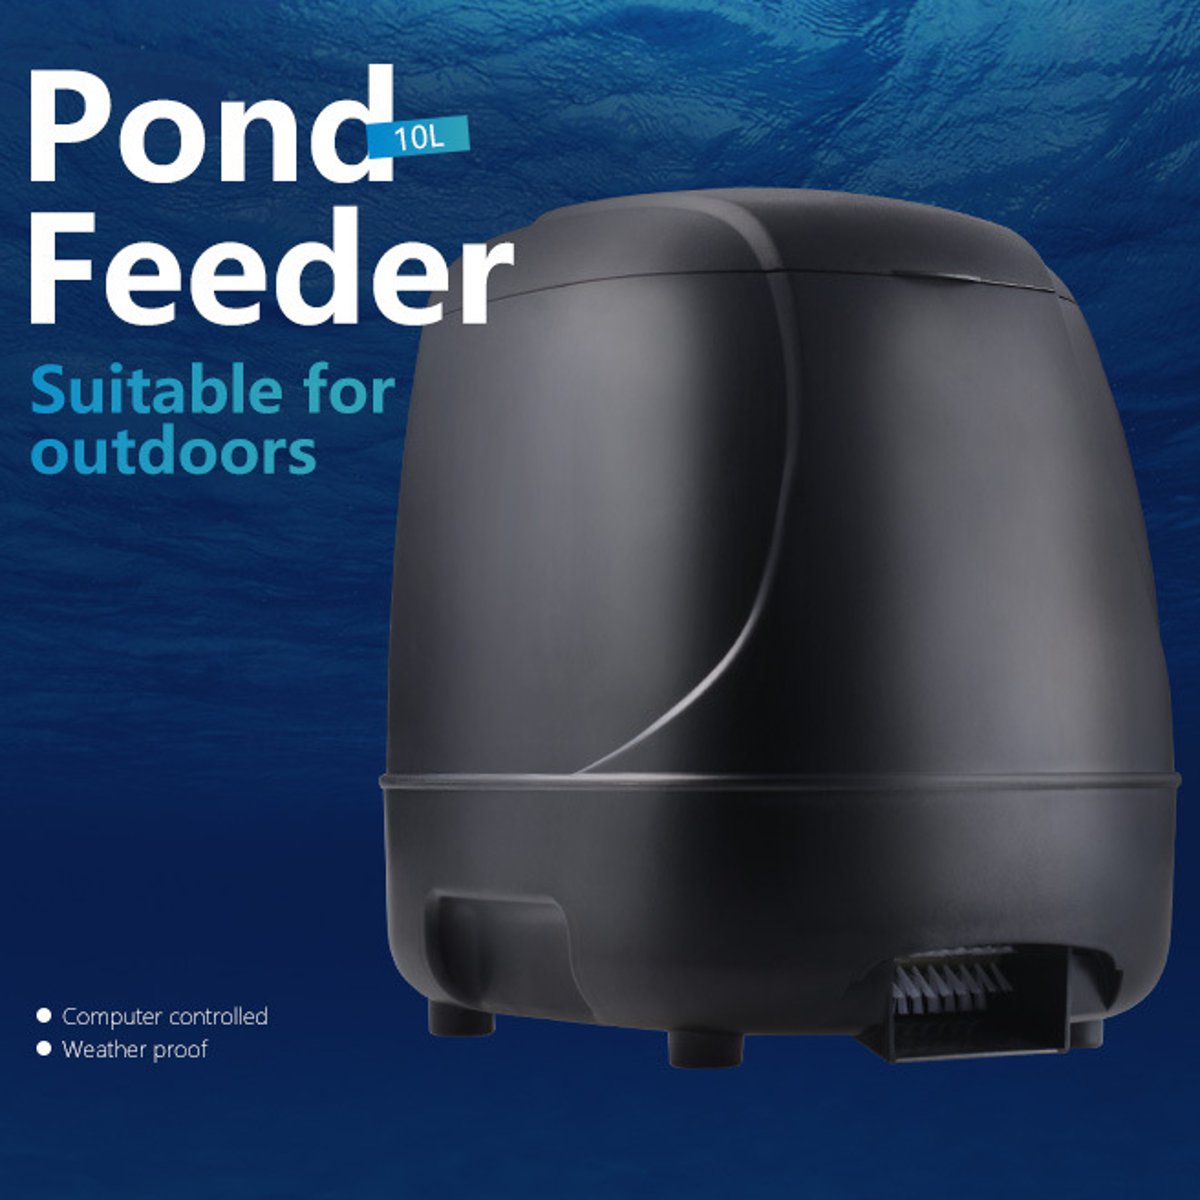 LCD Automatic Fish Food Feeder Pond Aquarium Tank Feeding Timer Digital Automatic Fish Feeder